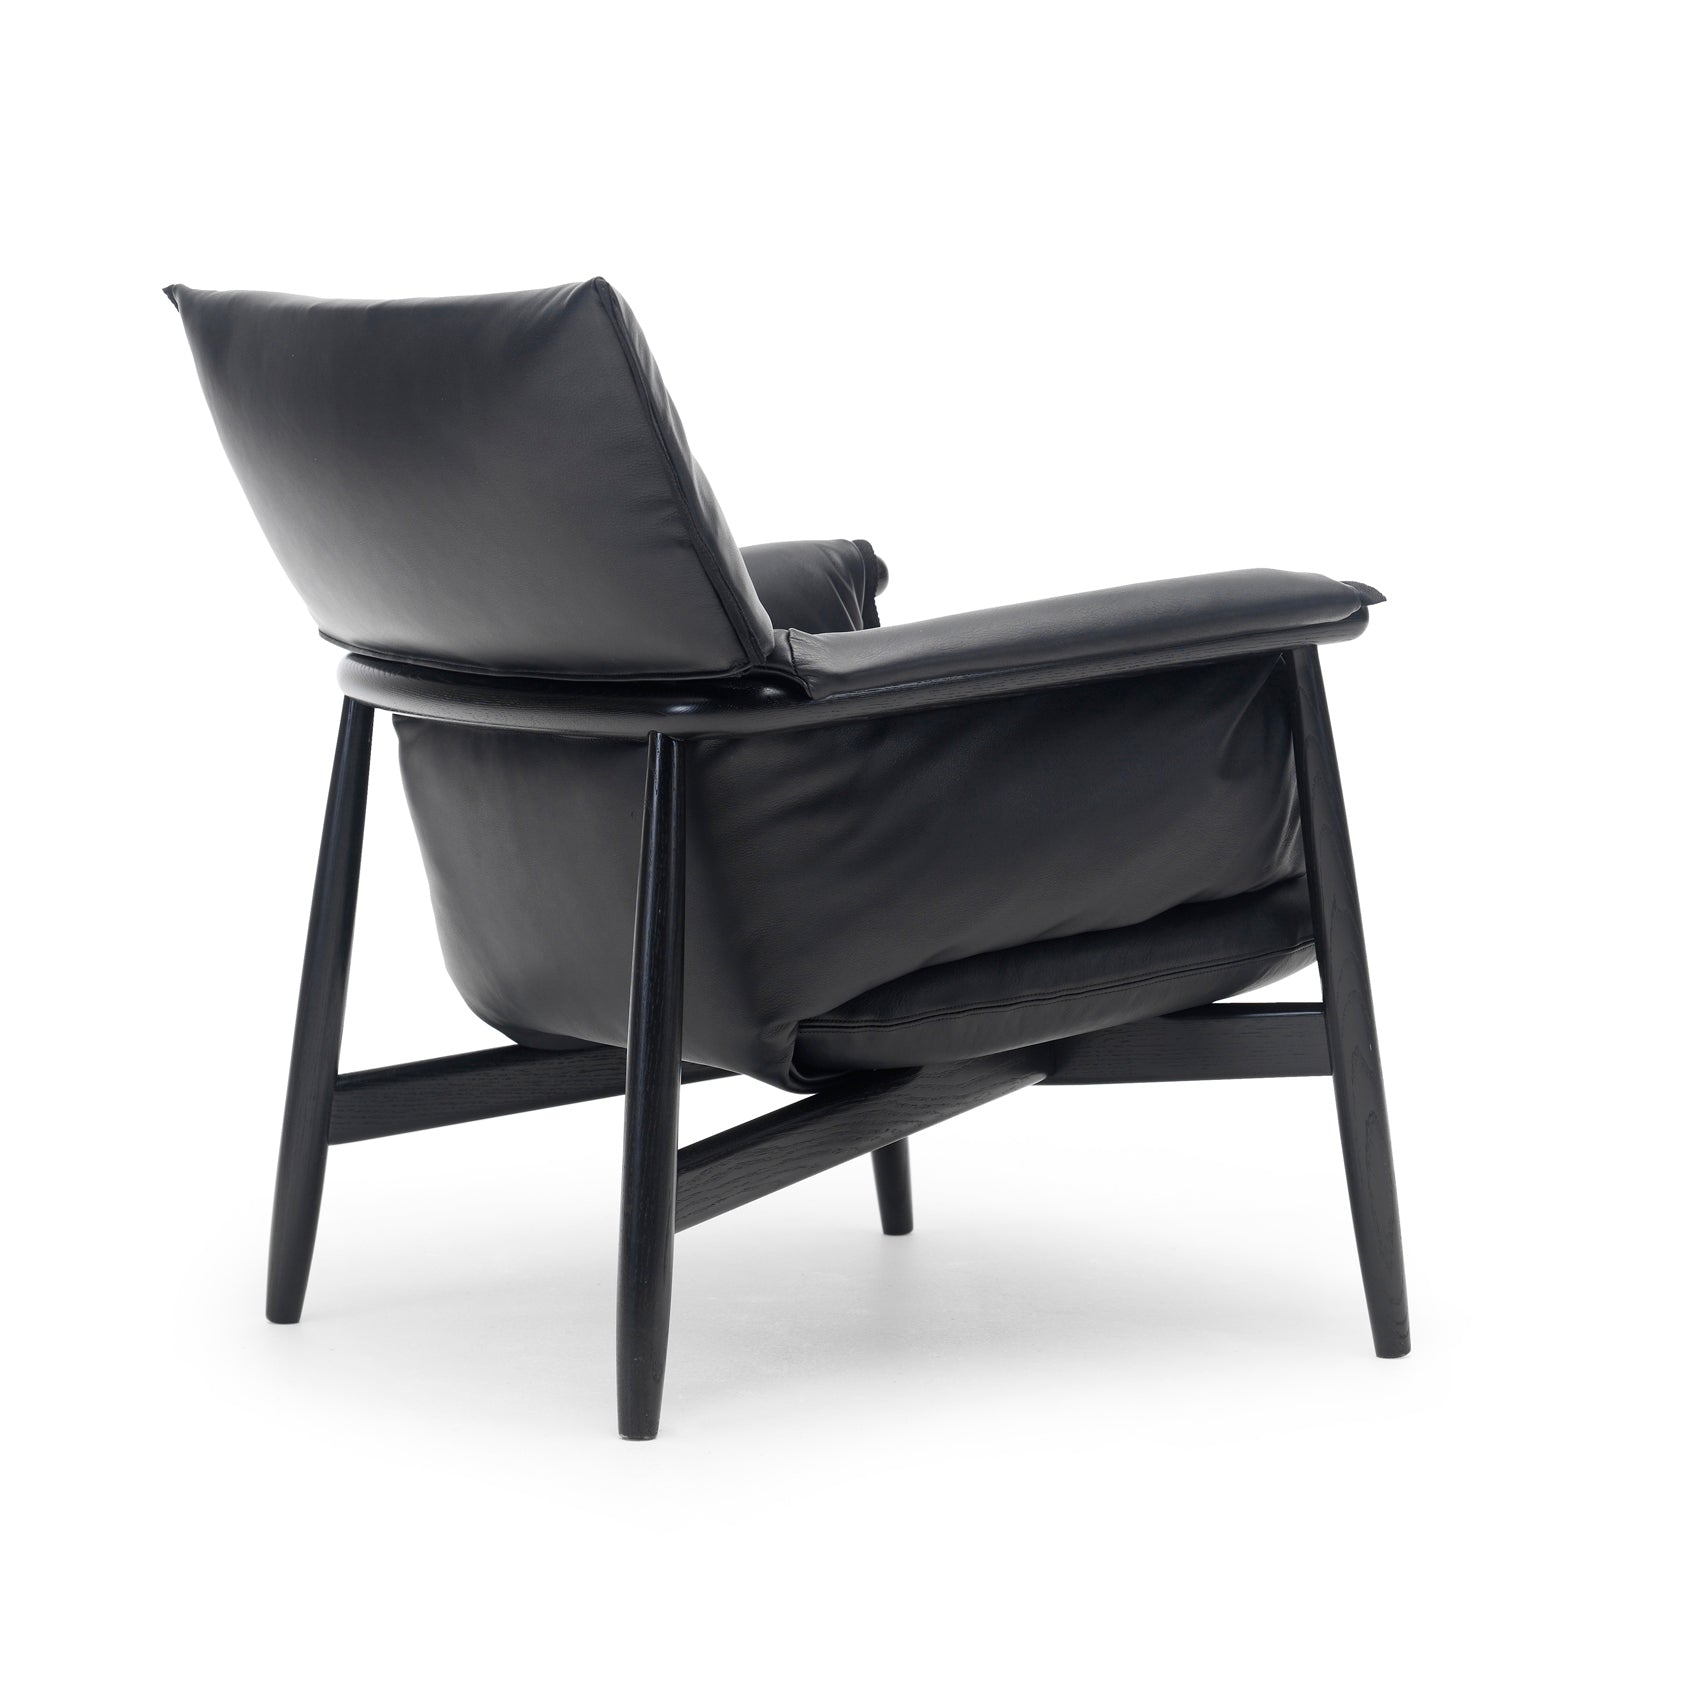 E015 Lounge Chair